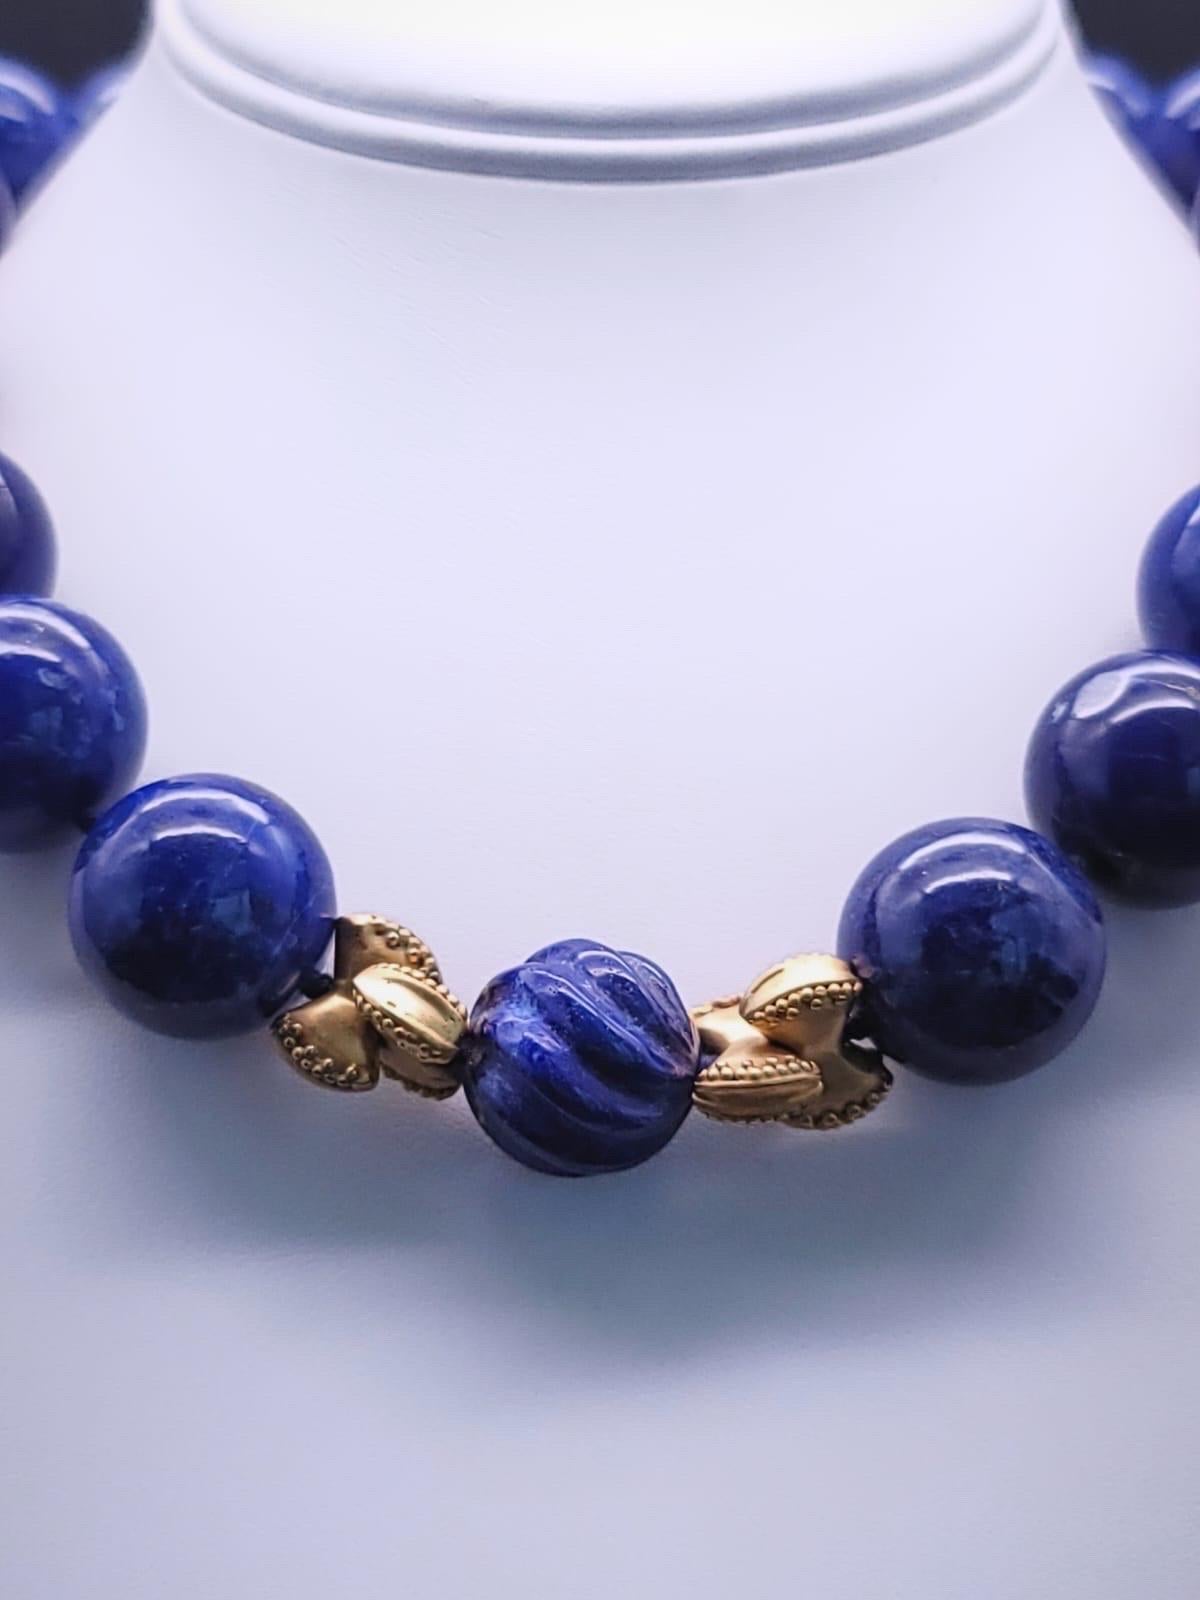 A.Jeschel Large Lapis Lazuli with vermeil knots necklace. 1